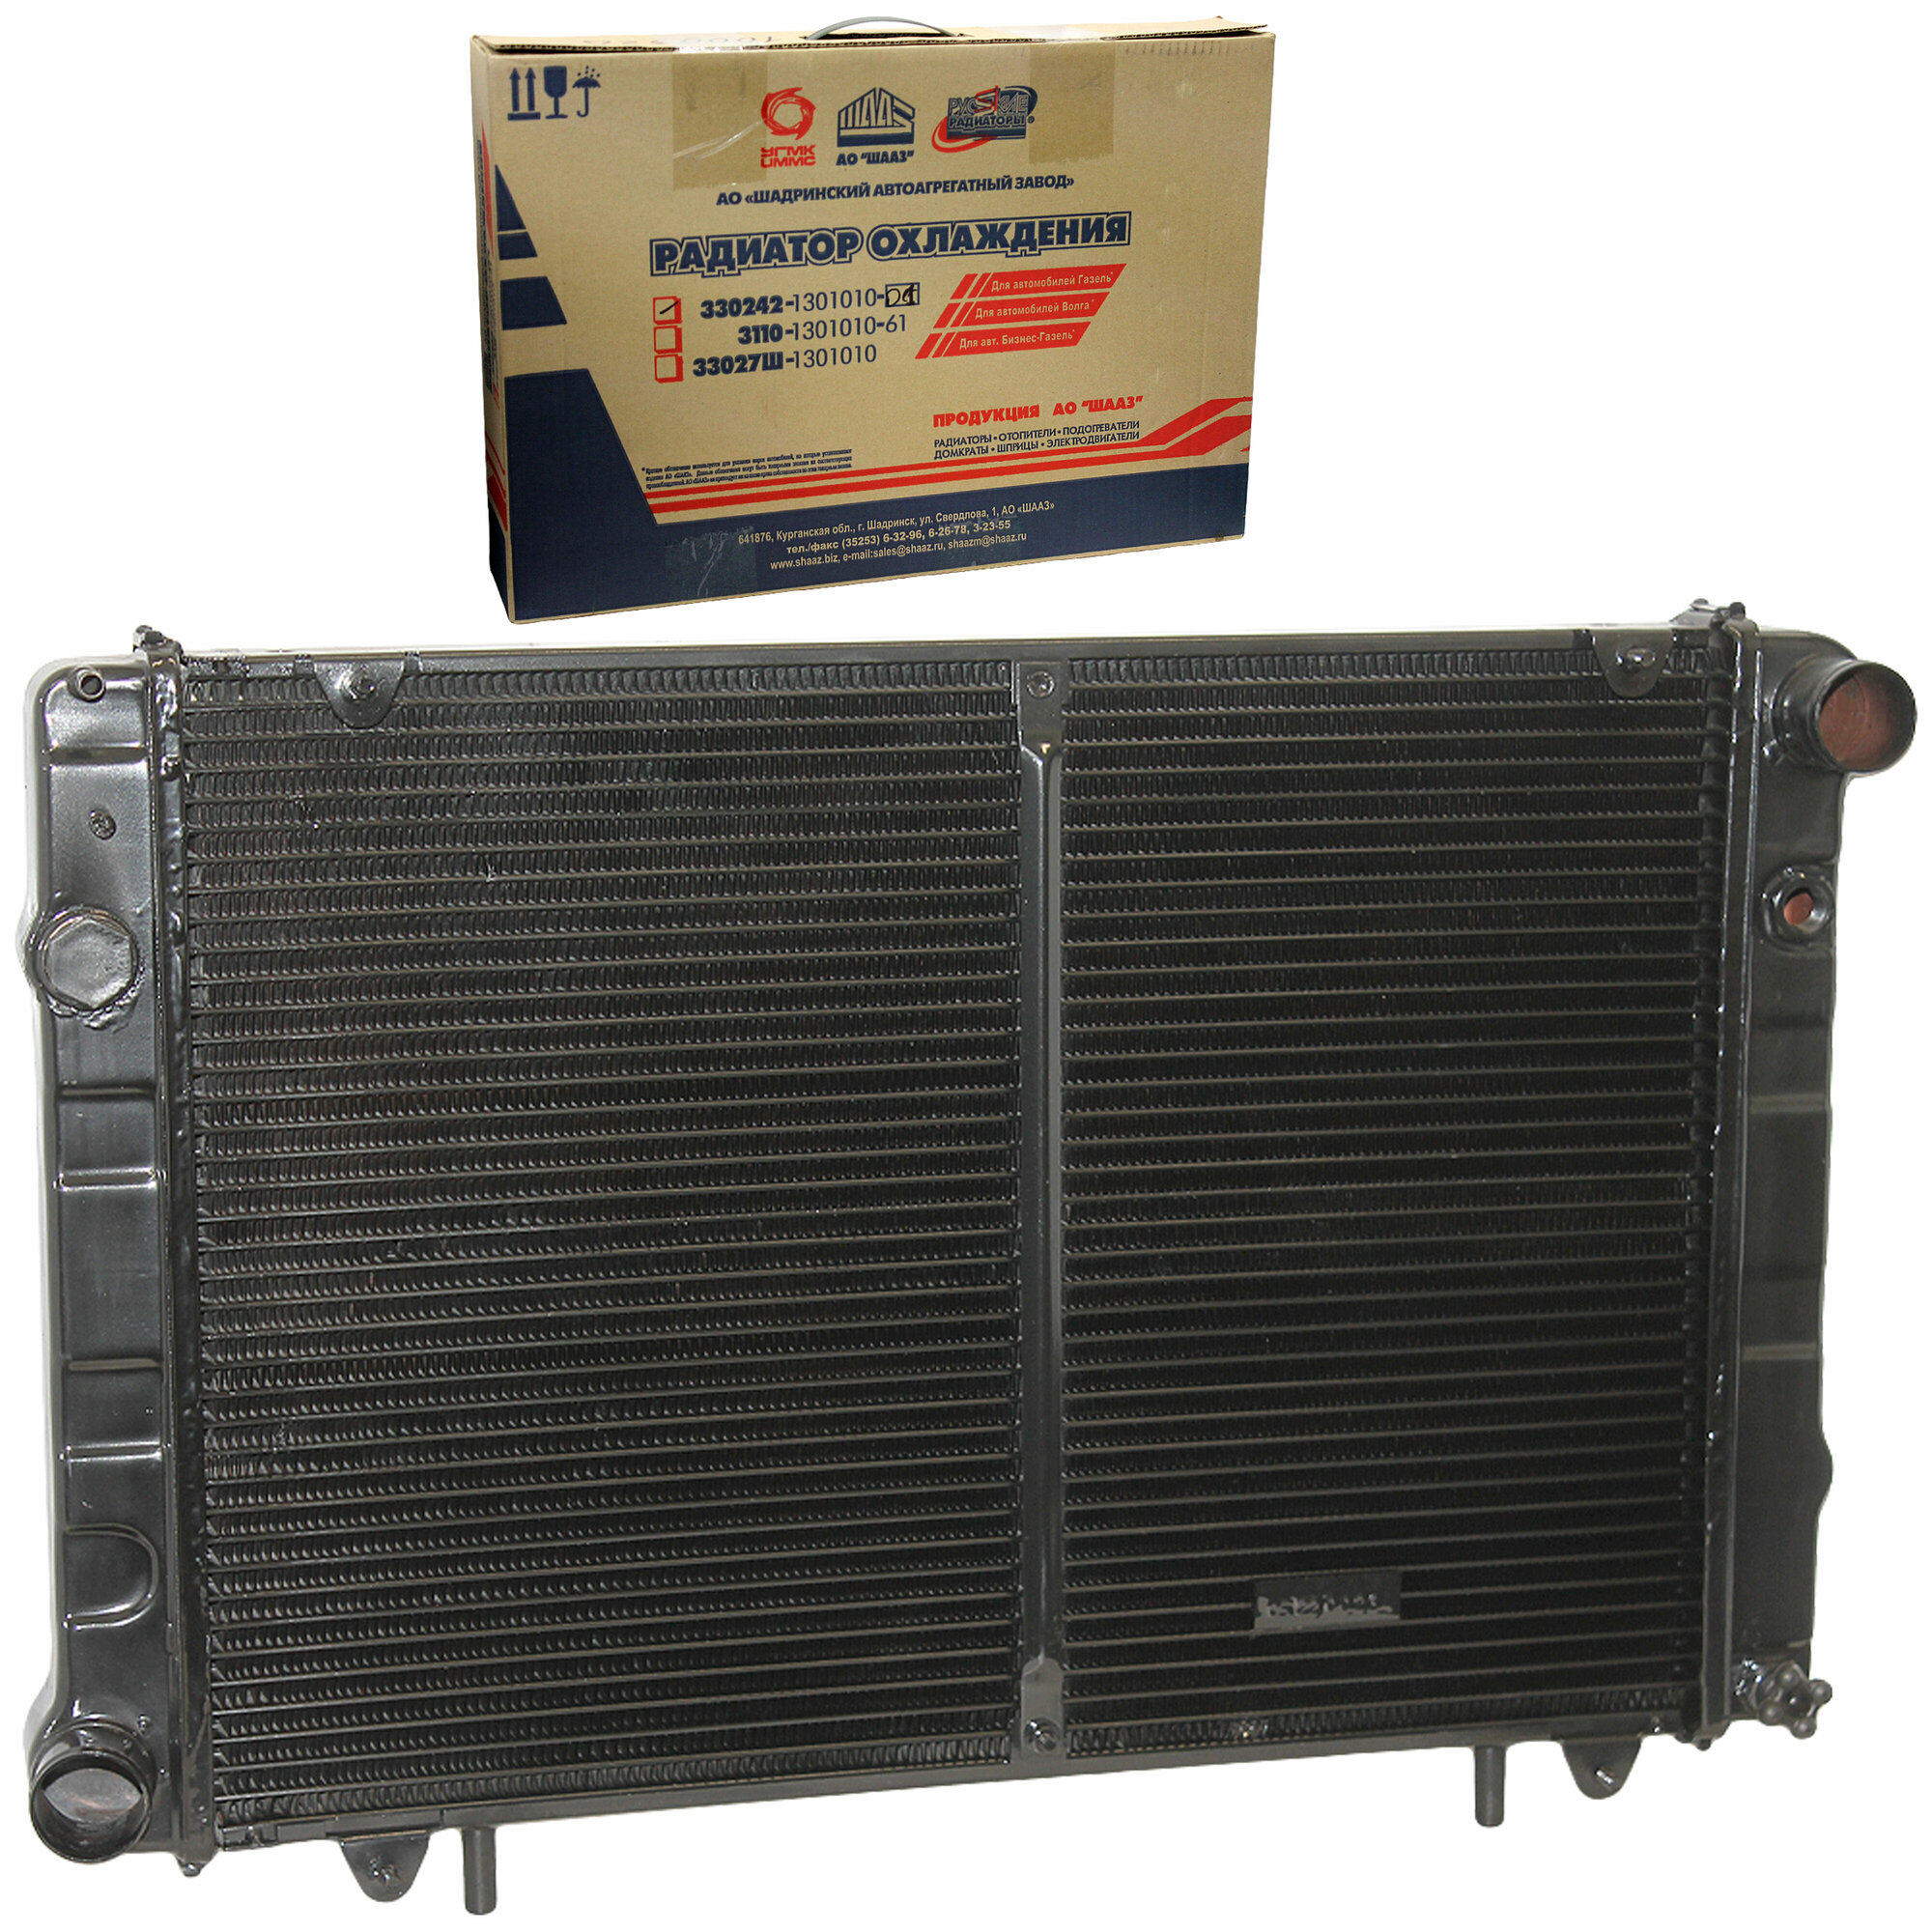 Радиатор охлаждения 2-рядный для Г-3302 дв. 4063 4216 до 2008 г. в. c дв. 4215